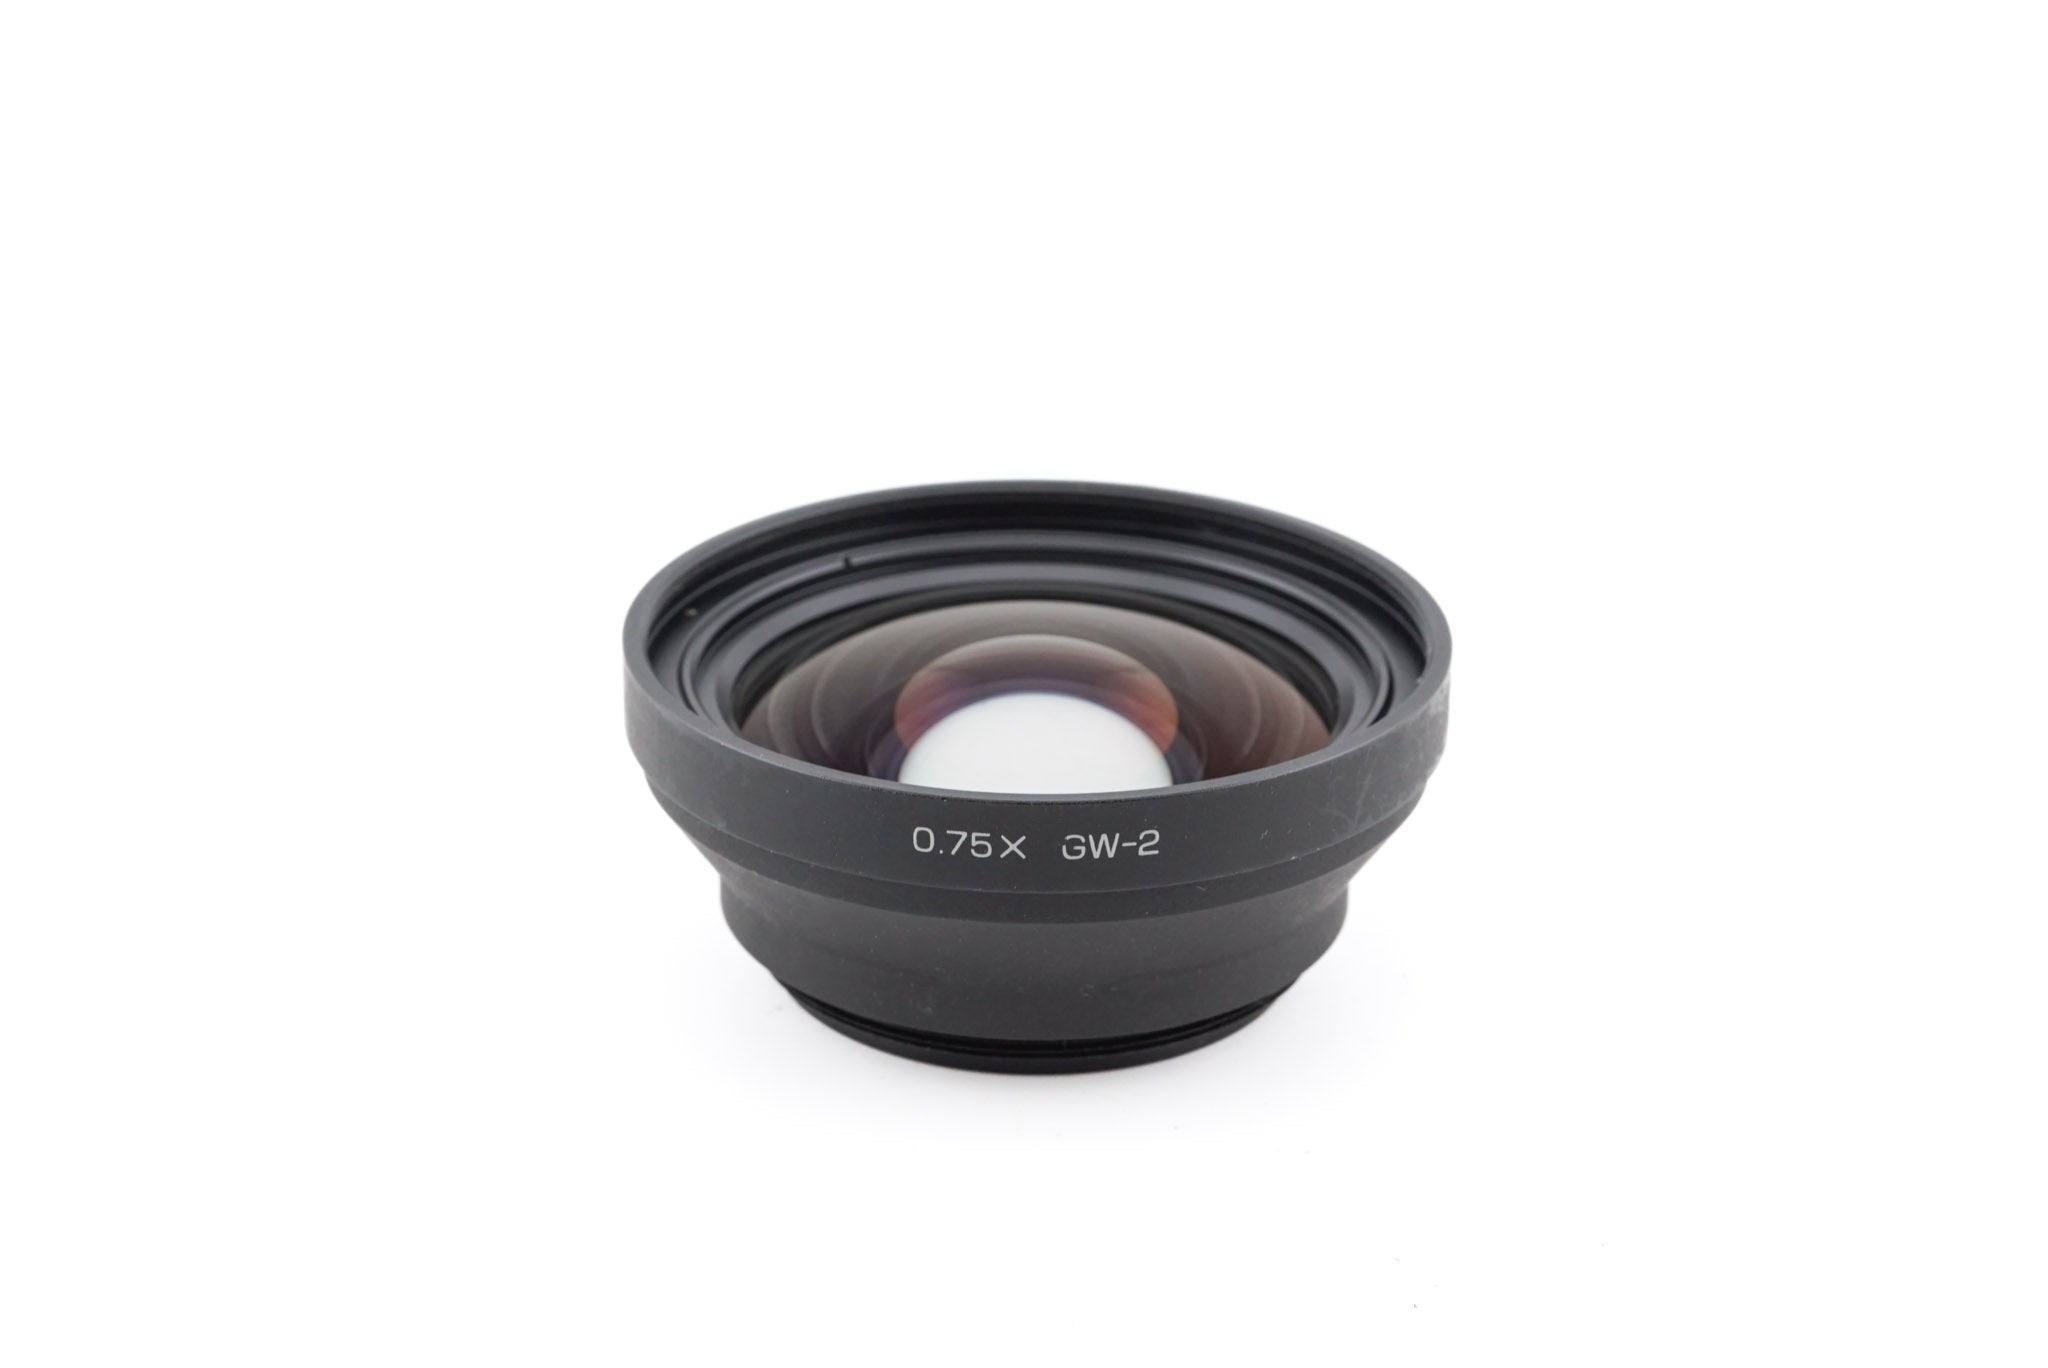 Ricoh 0.75x GW-2 Wide-Angle Conversion Lens - Lens